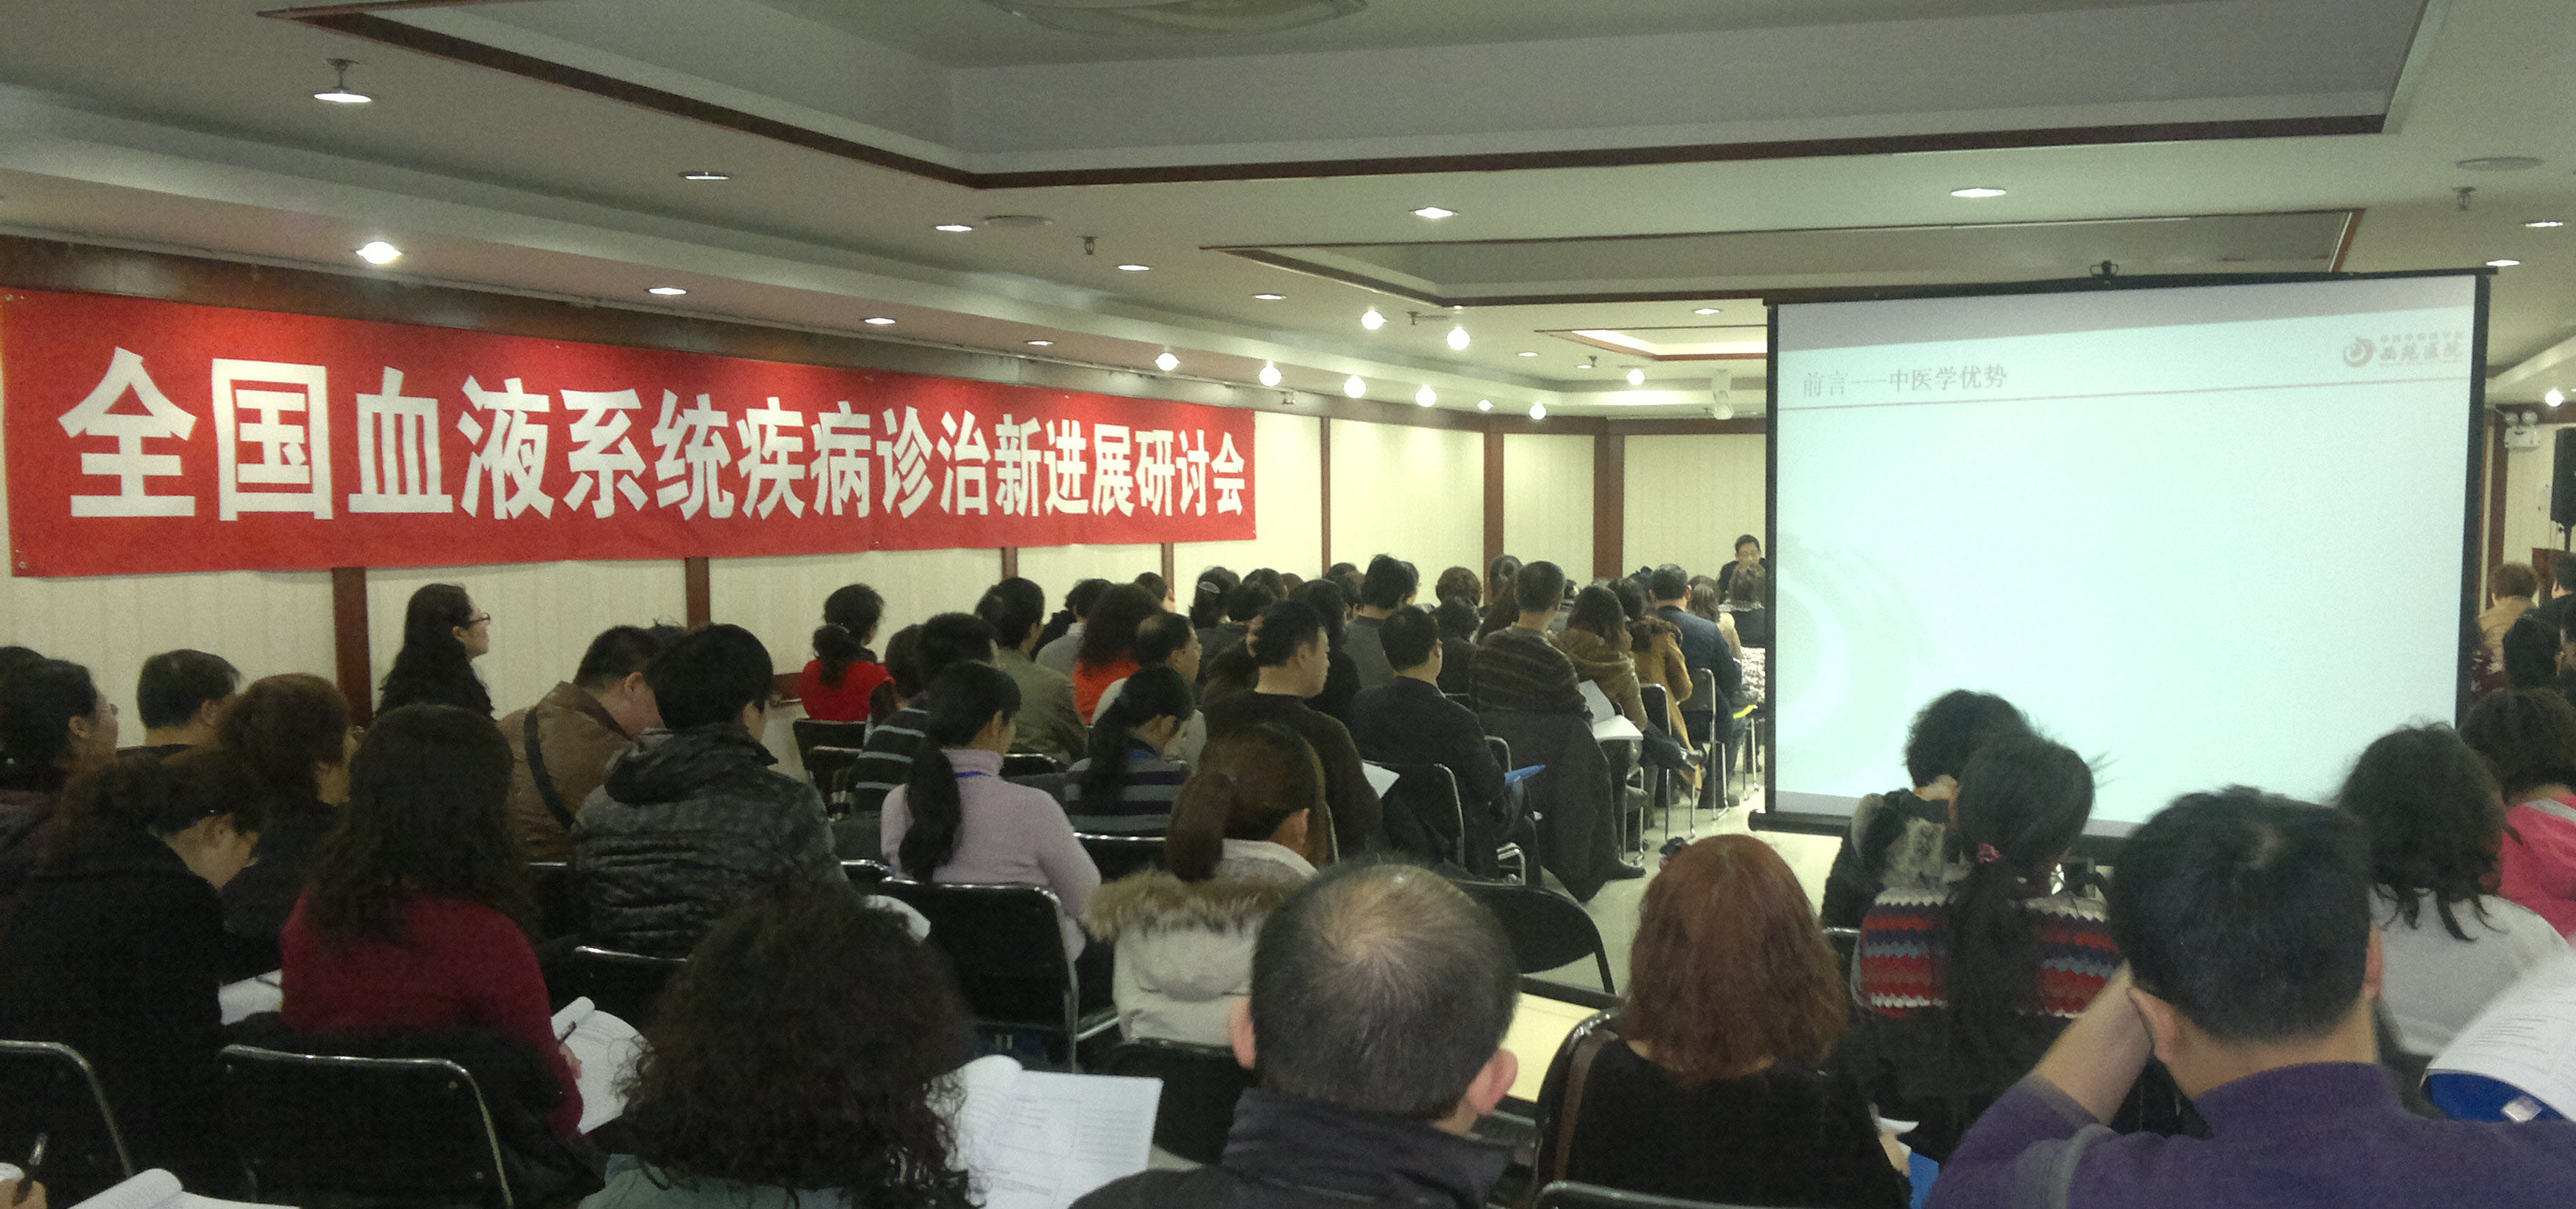 全国血液系统疾病诊治新进展研讨会在北京隆重召开